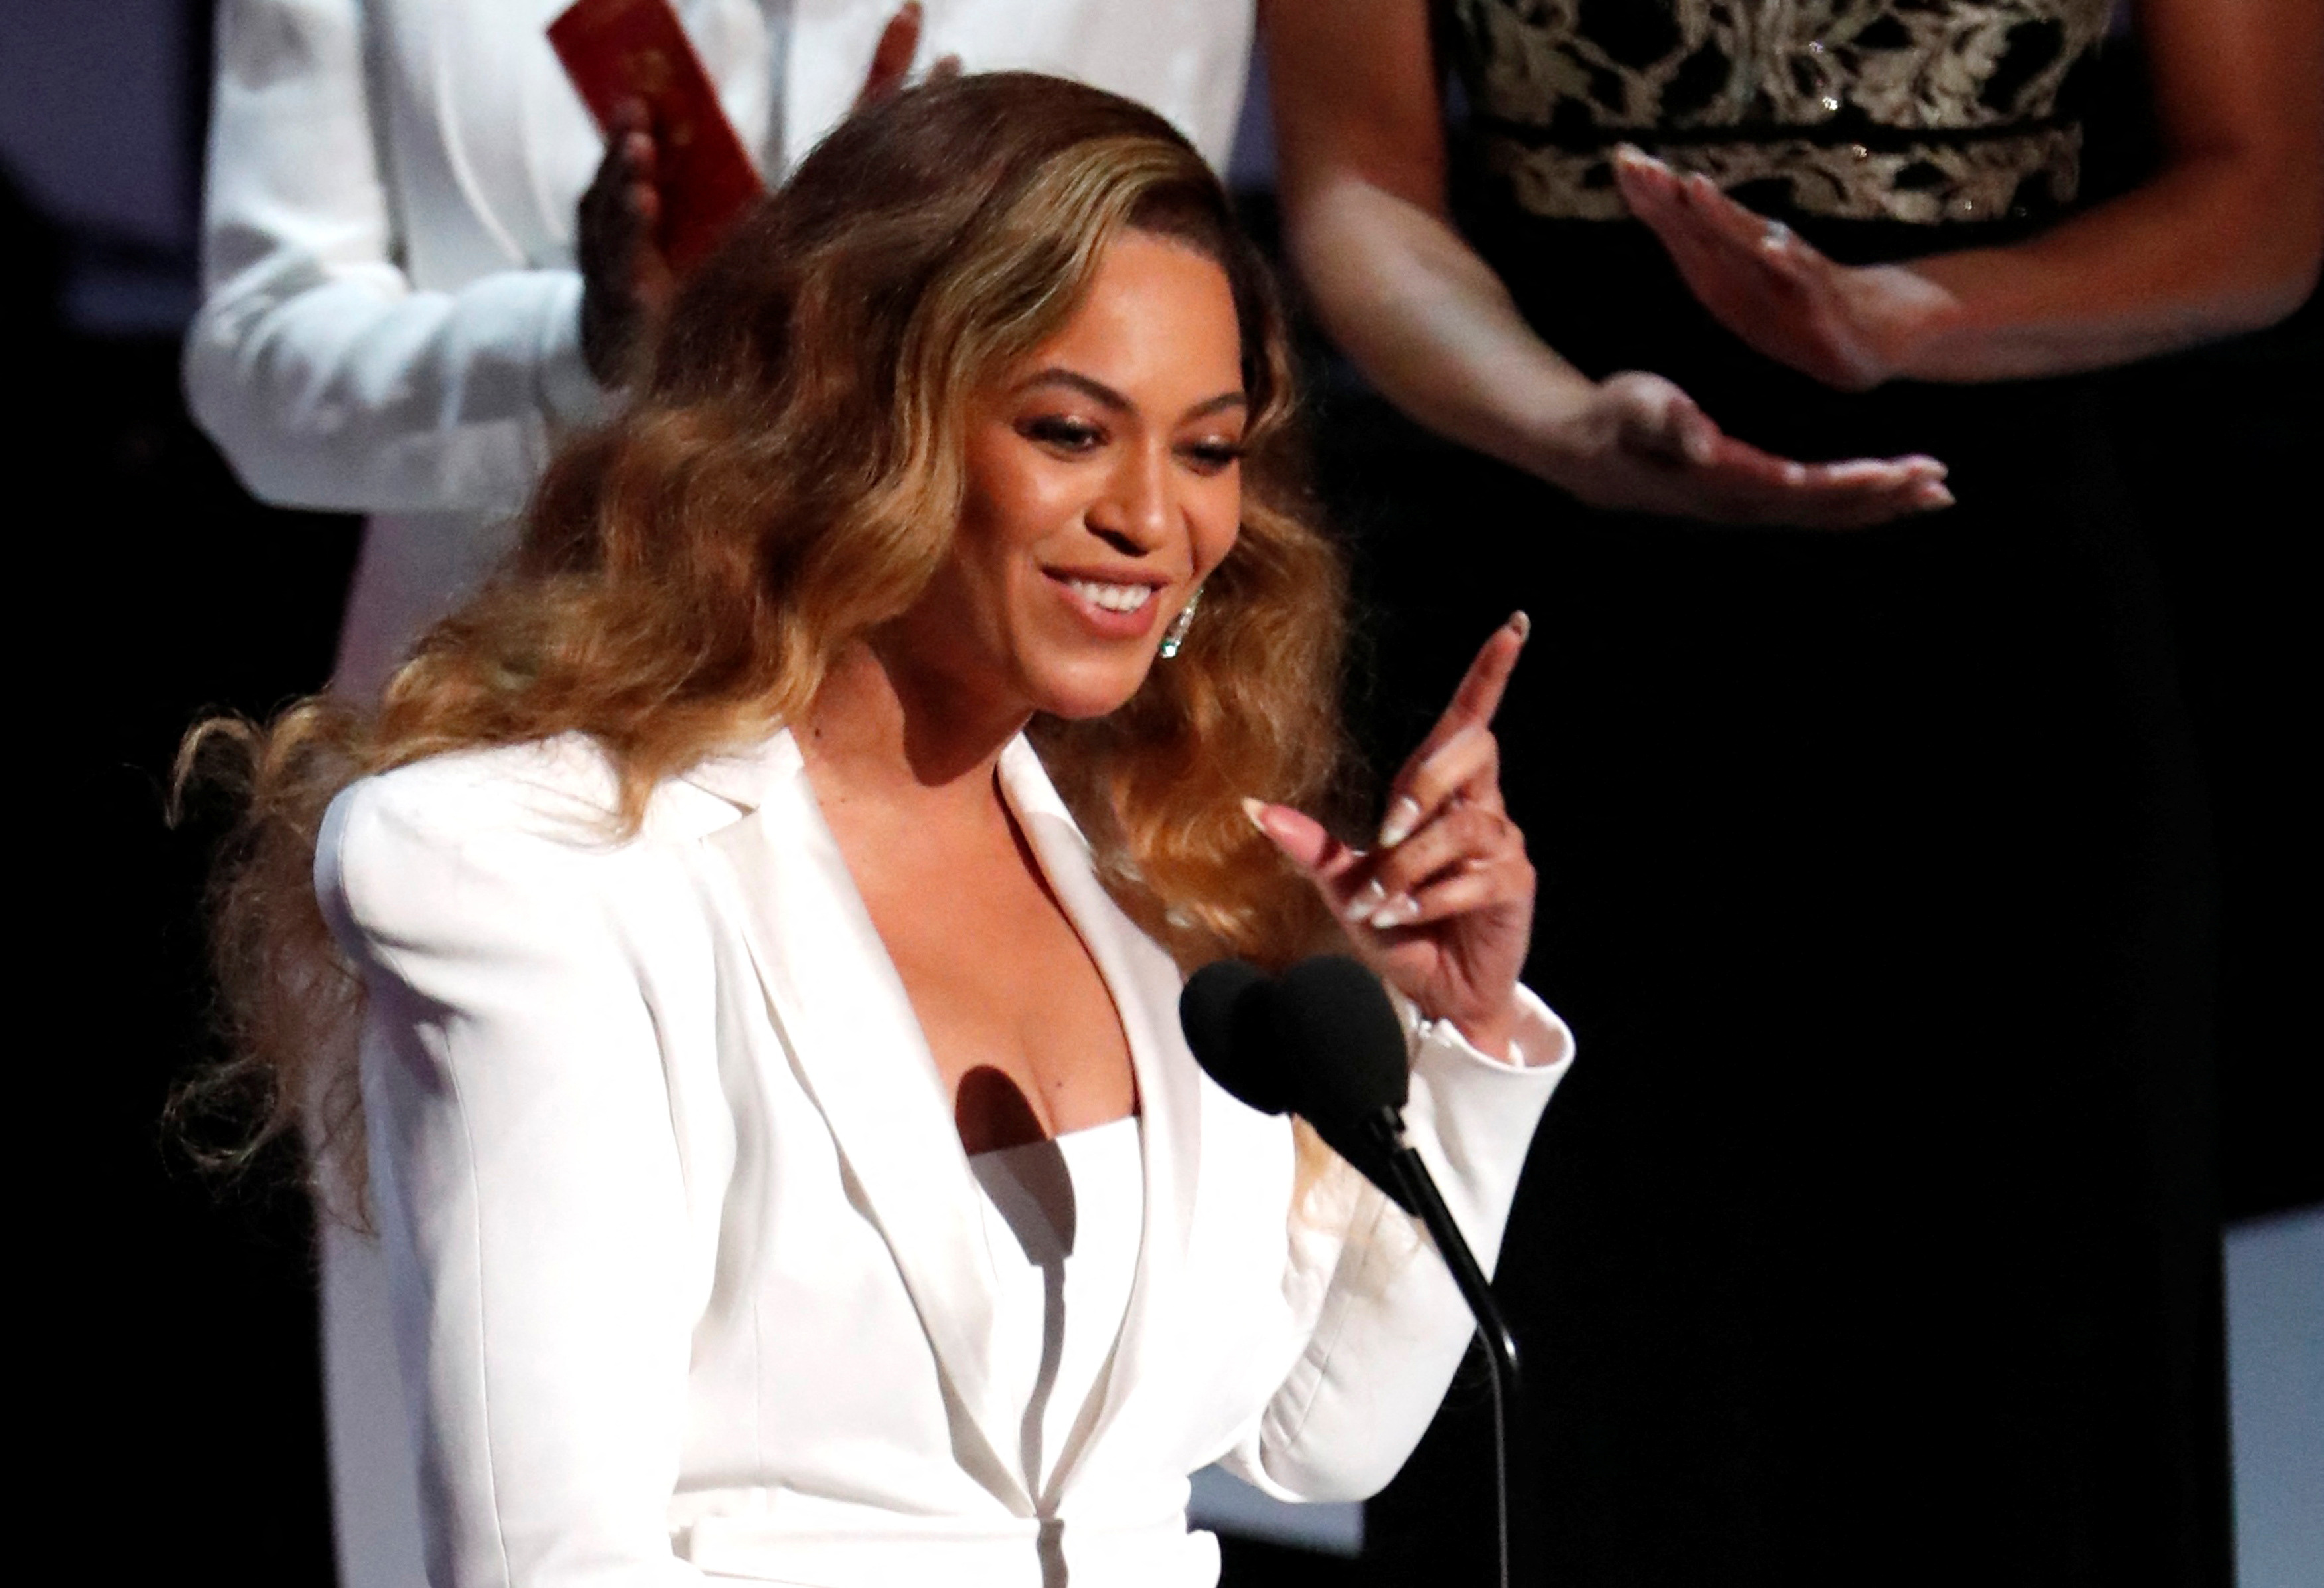 La cantante Beyoncé apoya a un estimado de 37 organizaciones caritativas además de contar con la suya propia llamada BeyGOOD (REUTERS/Mario Anzuoni/File Photo)